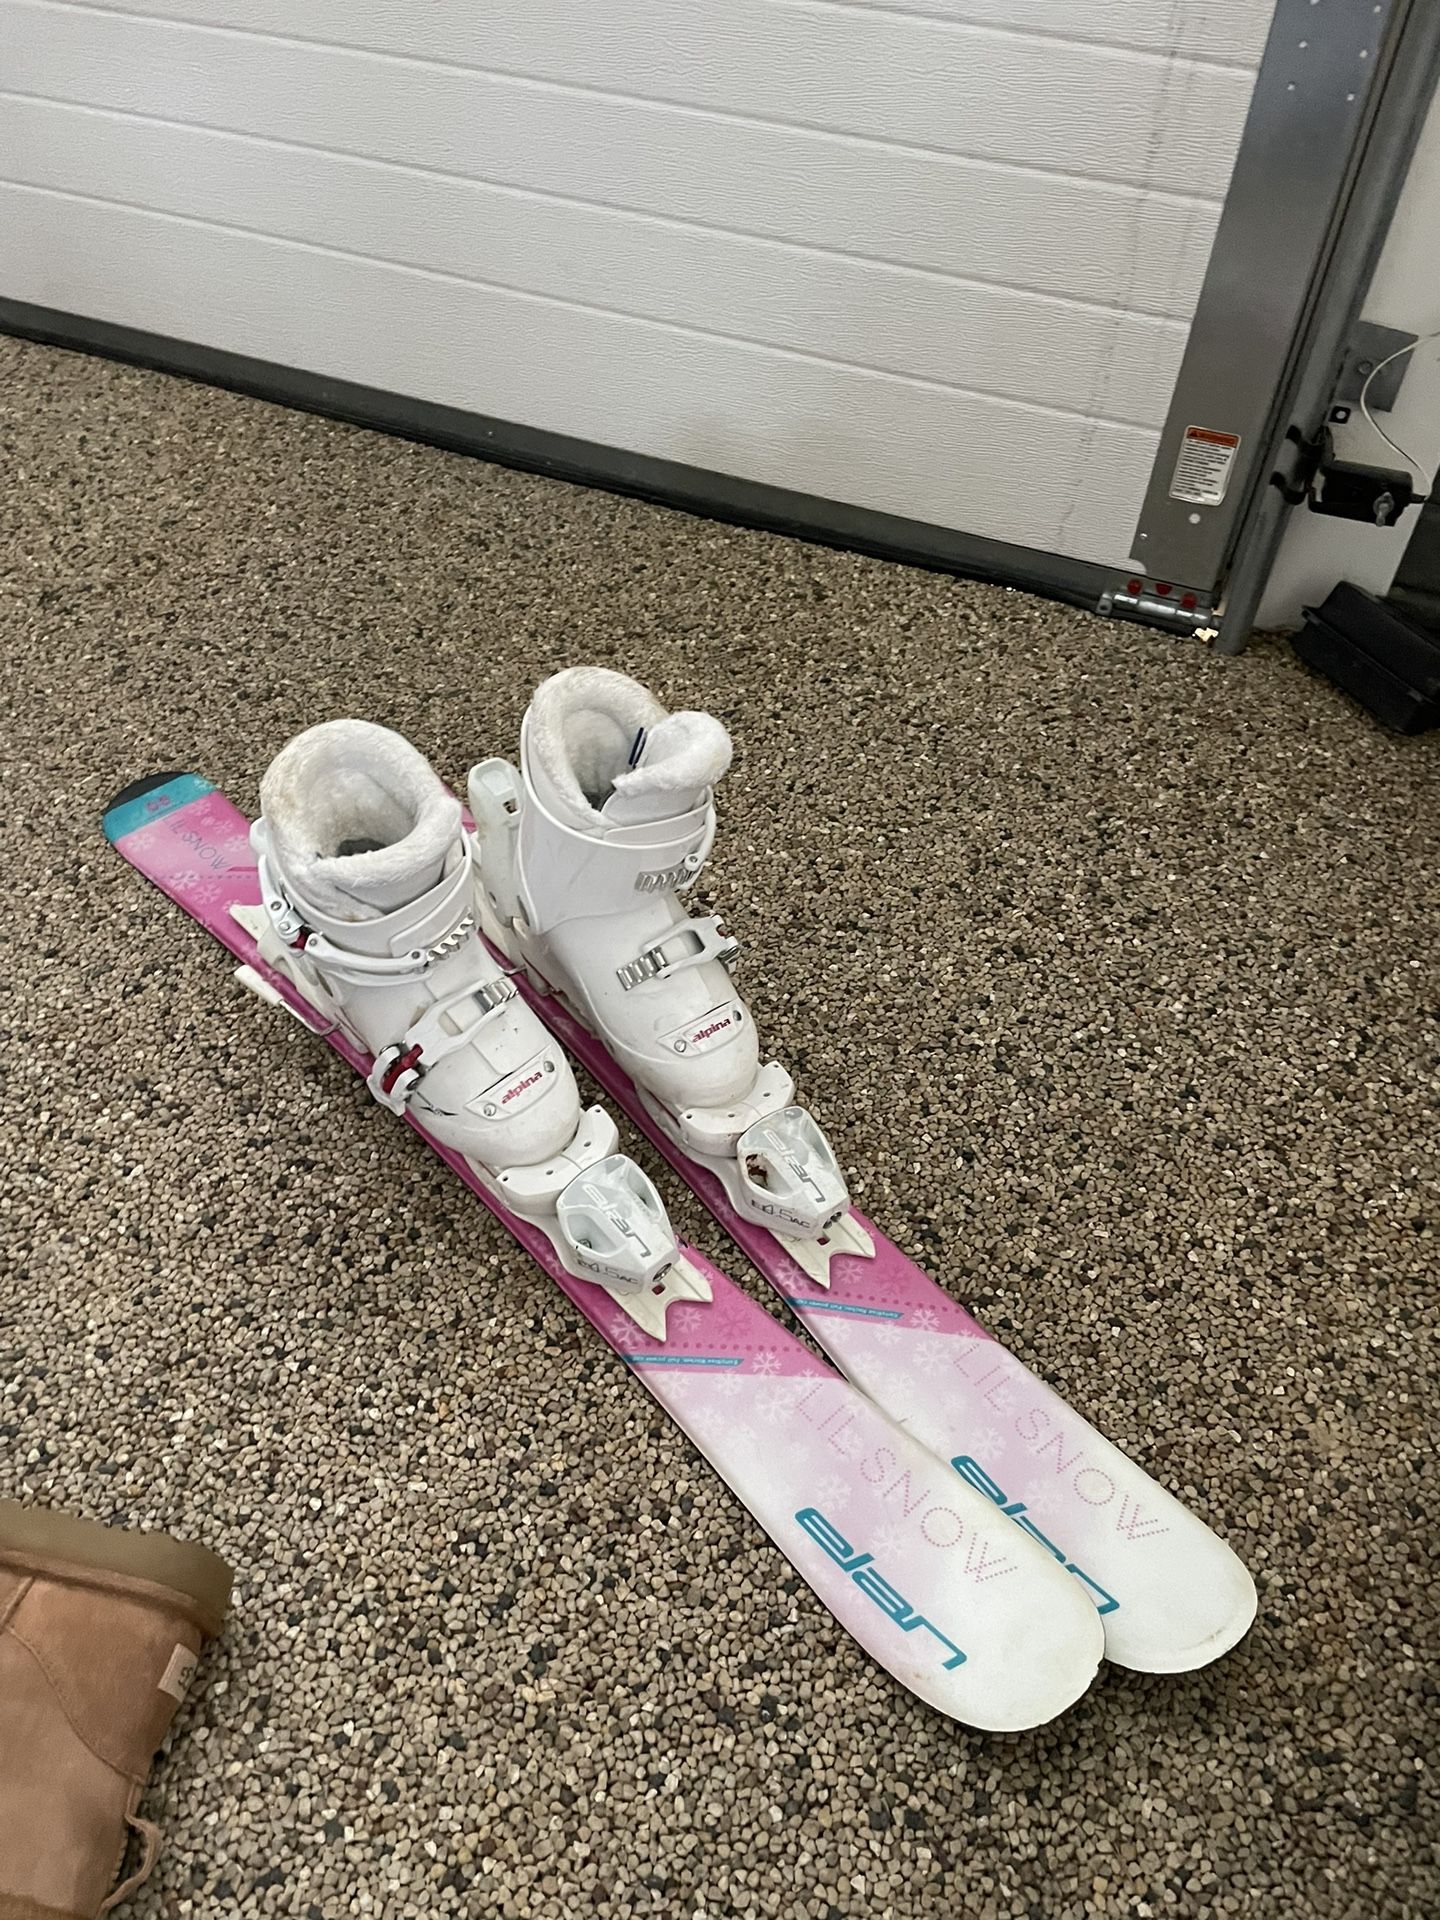 Junior Skis